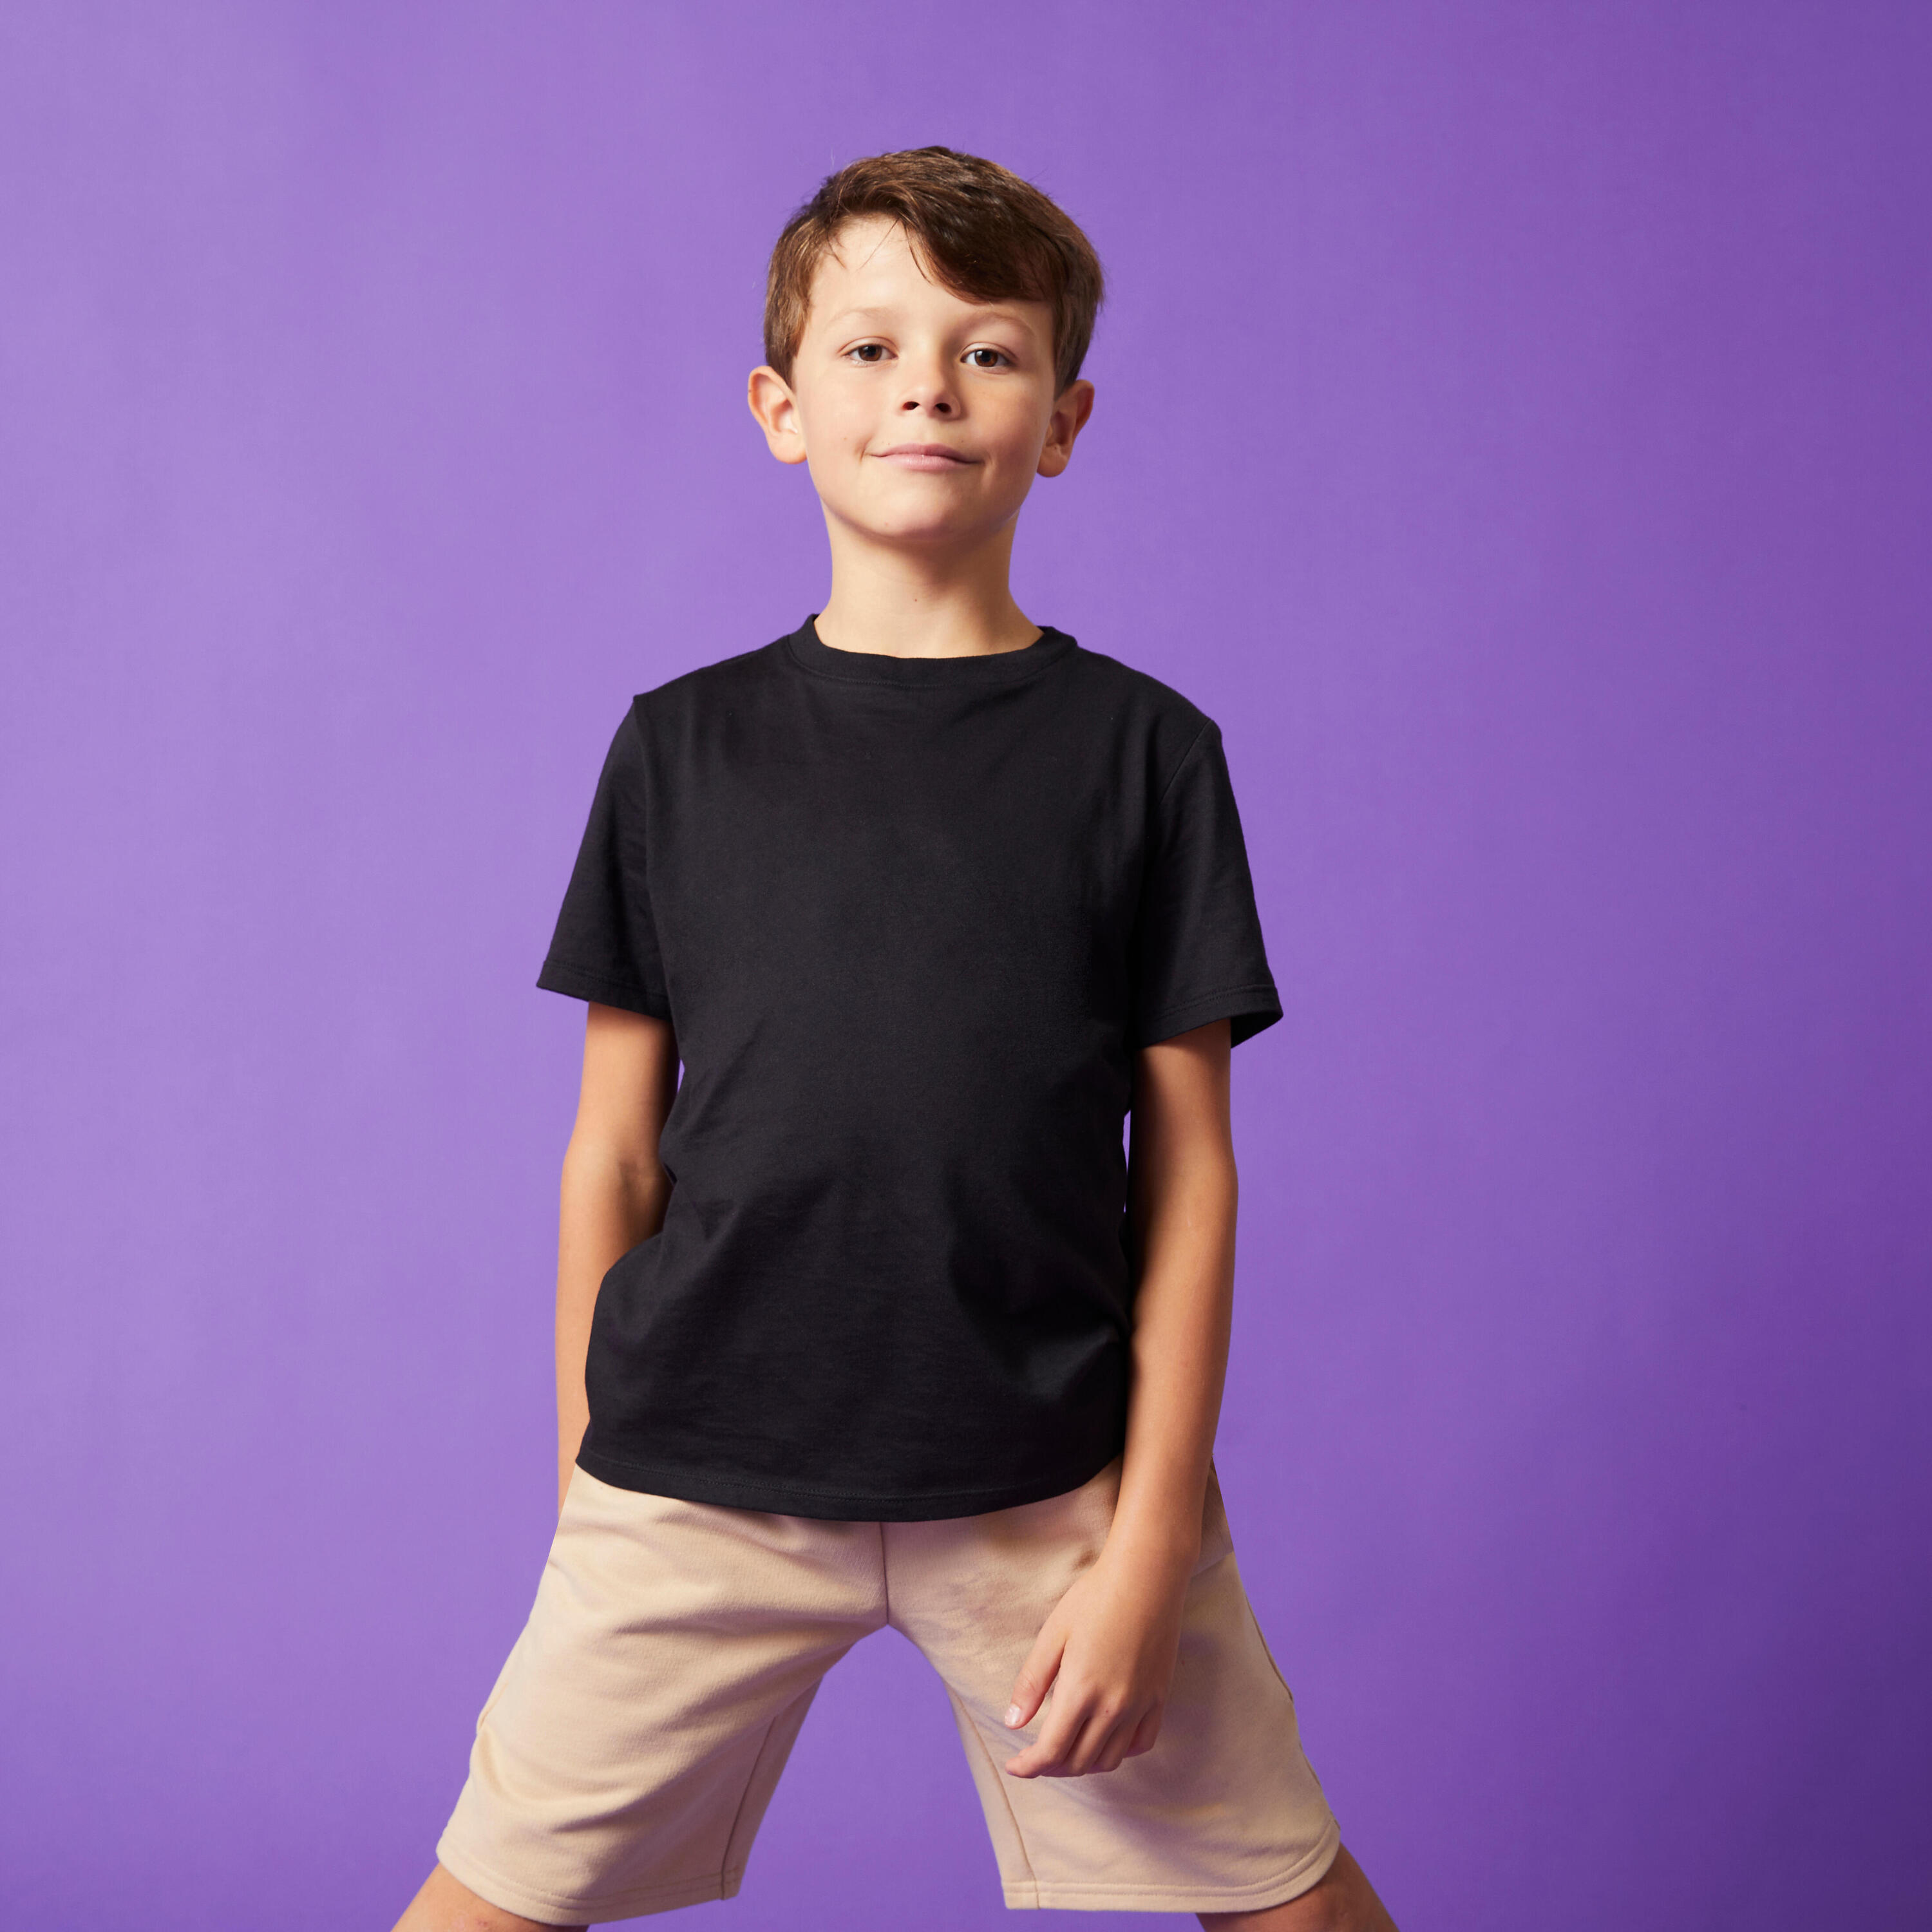 Kids' Unisex Cotton T-Shirt - Black 2/8